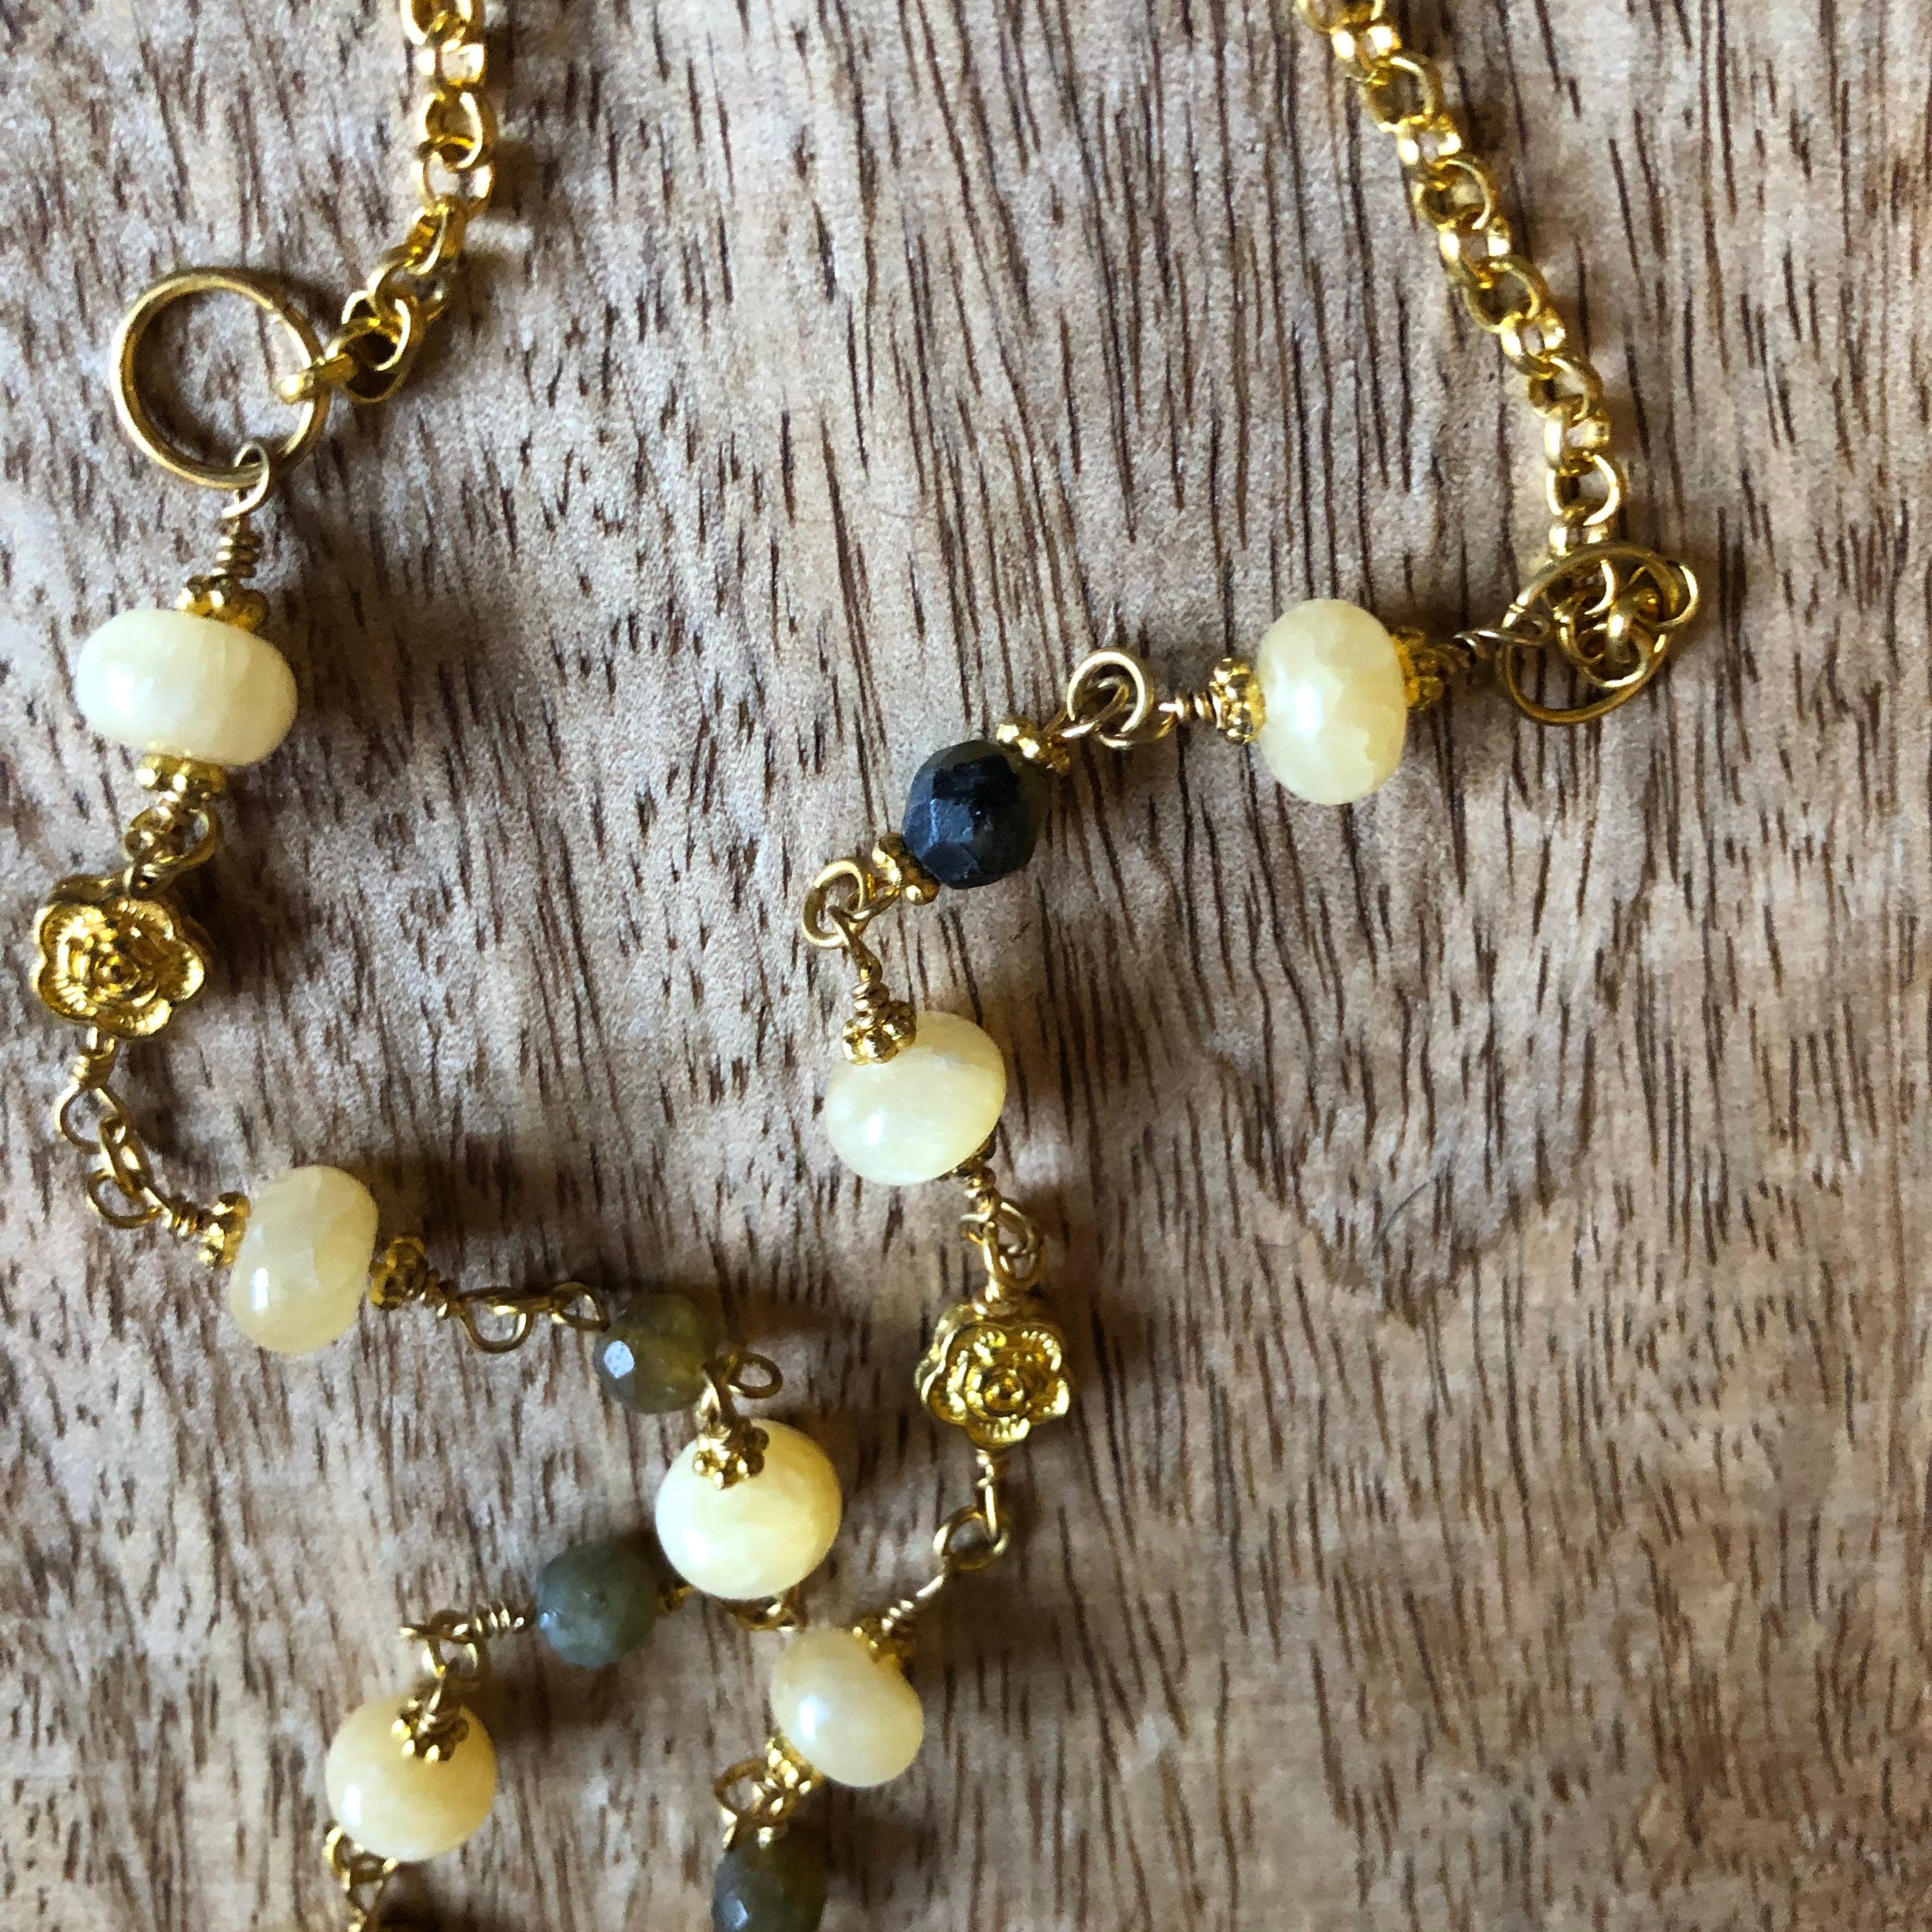 Labradorite Bib Necklace,Natural Labradorite Necklace,Labradorite handmade Necklace,Faceted Labradorite necklace,Yellow Labradorite Necklace